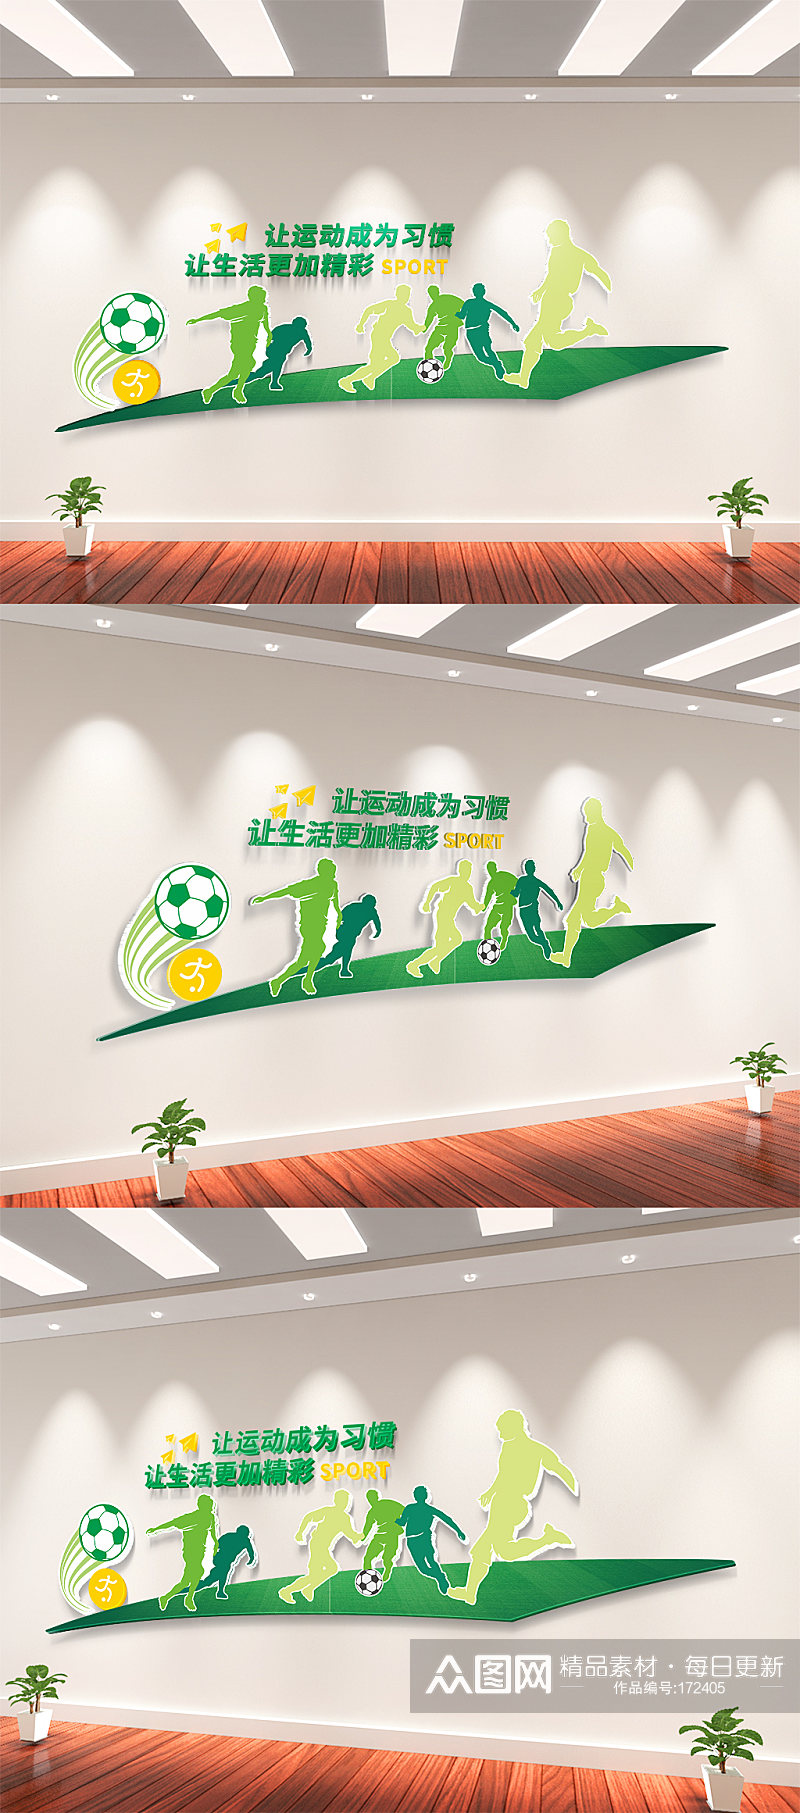 足球运动体育文化墙素材